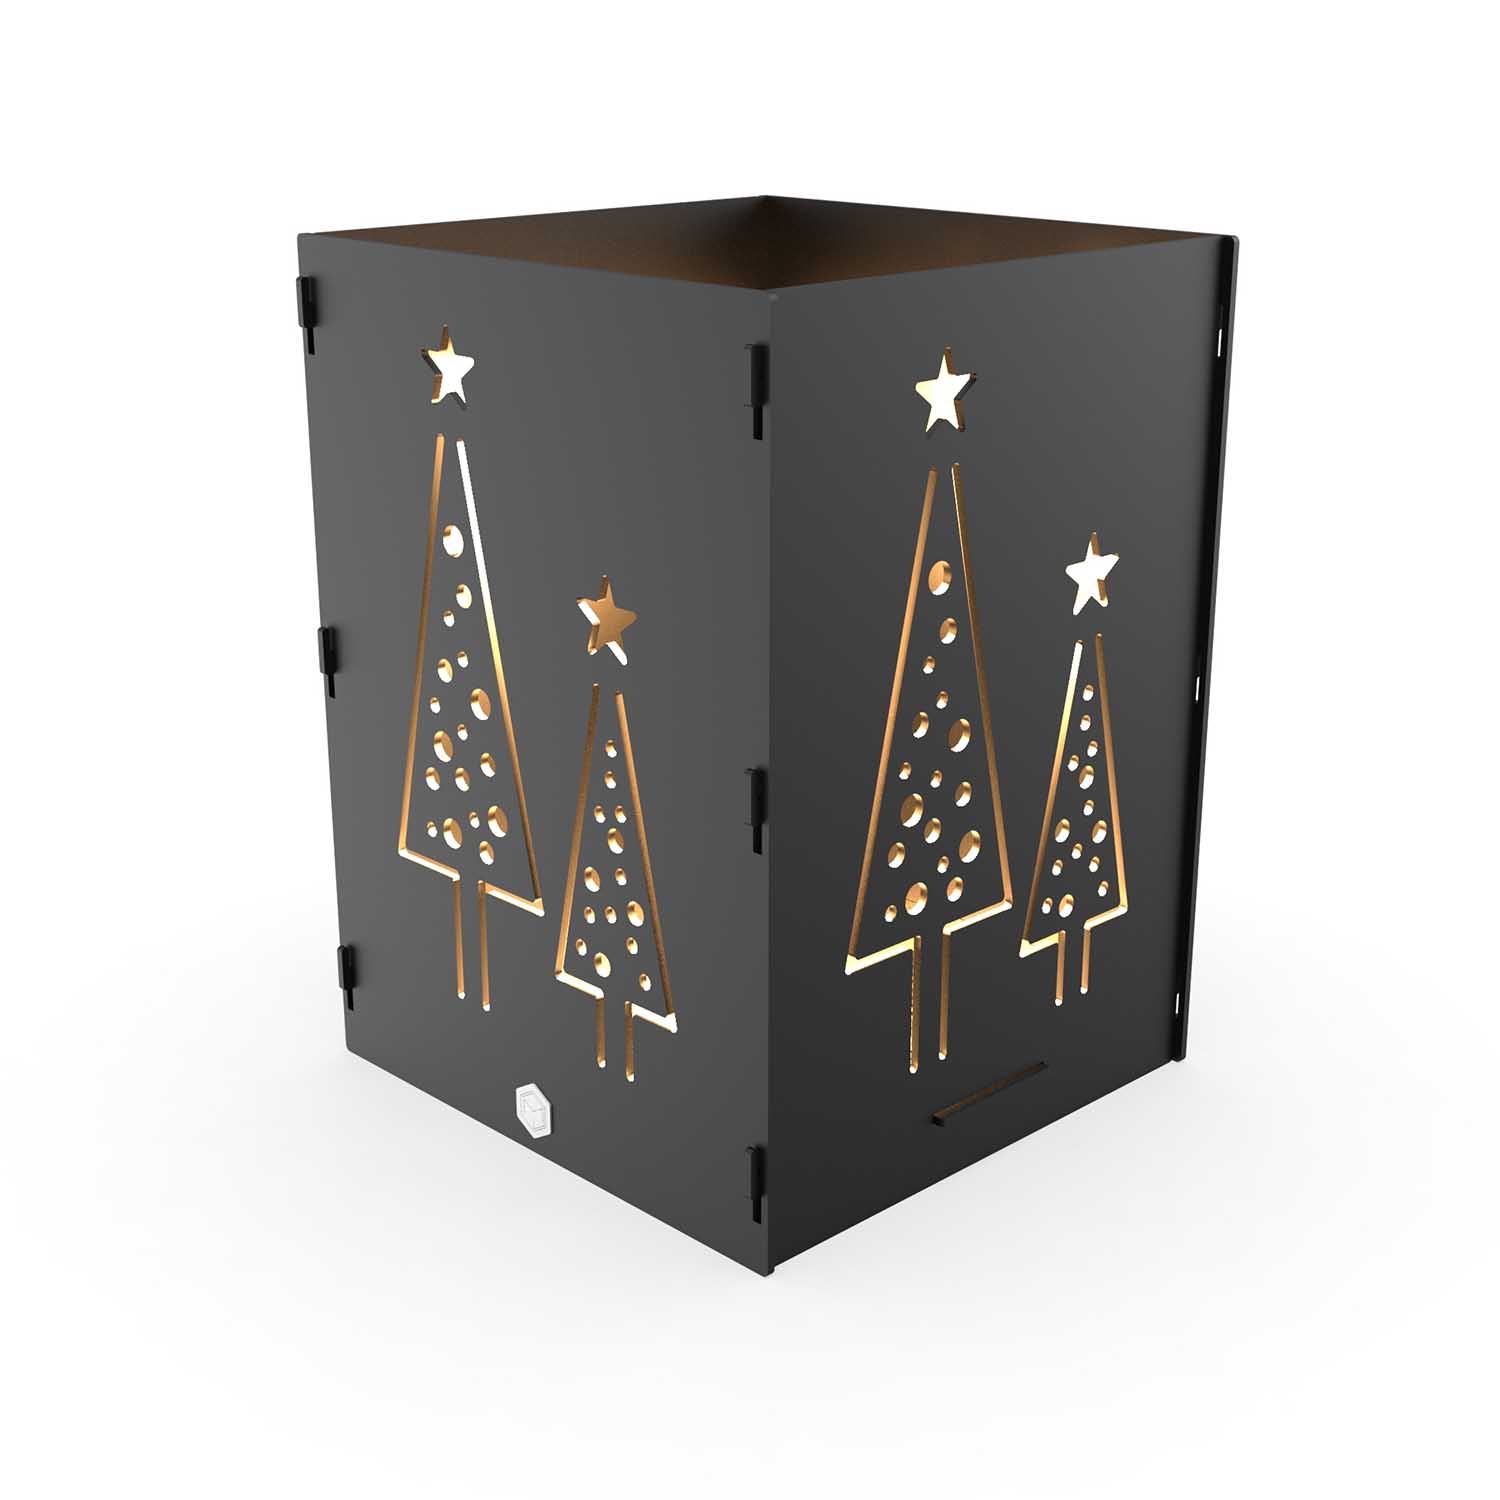 Windlicht Weihnachtsbäume aus Stahl, schwarz pulverbeschichtet, 15 x 15 x 20 cm